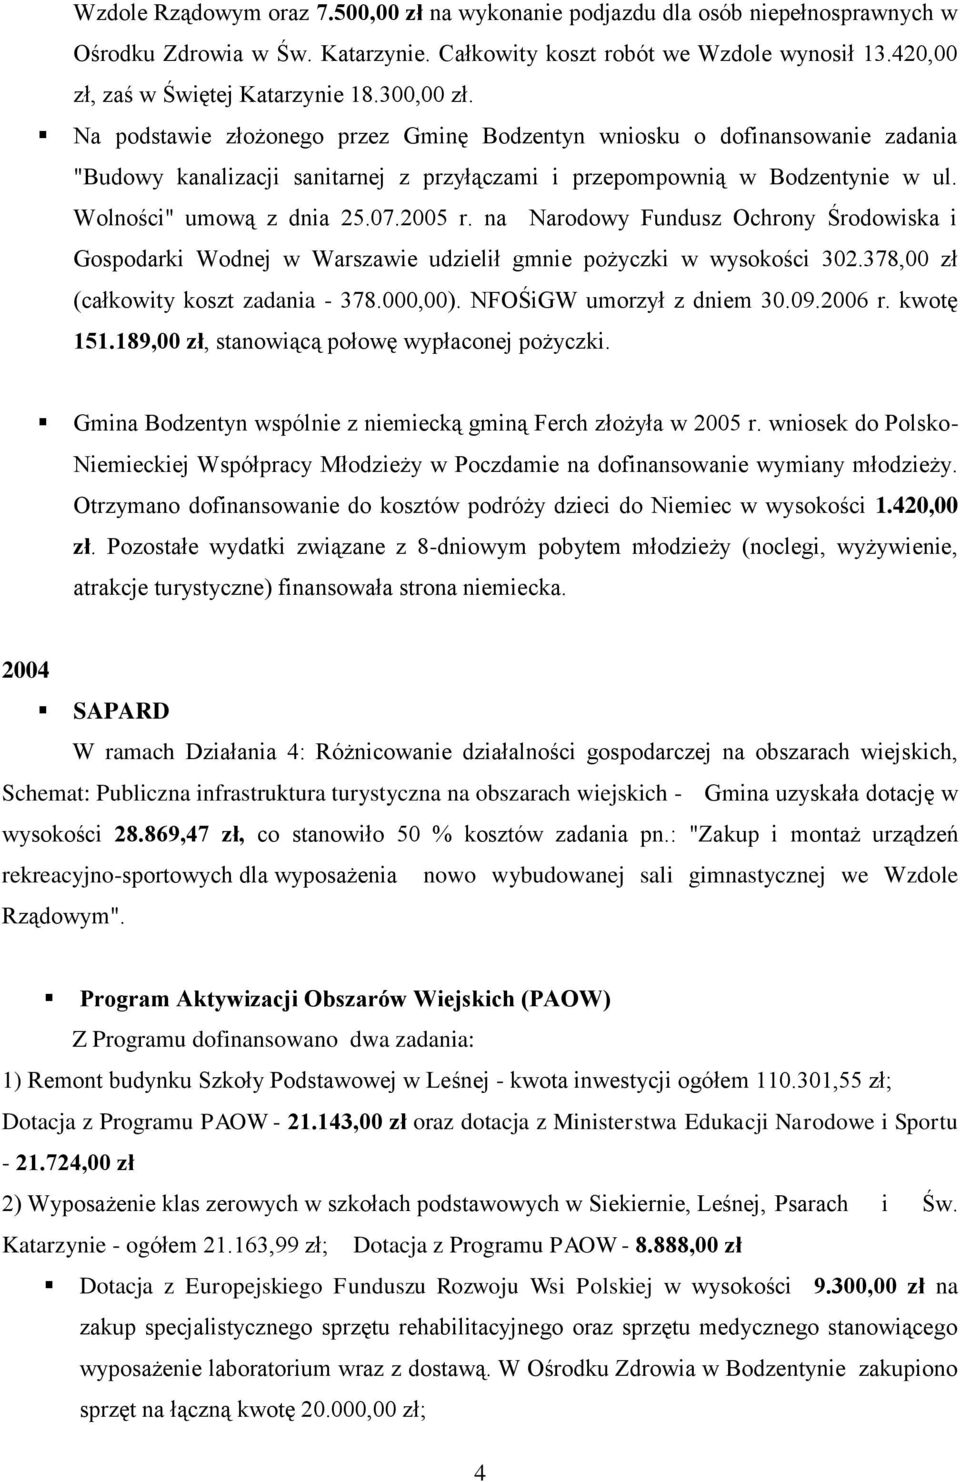 2005 r. na Narodowy Fundusz Ochrony Środowiska i Gospodarki Wodnej w Warszawie udzielił gmnie pożyczki w wysokości 302.378,00 zł (całkowity koszt zadania - 378.000,00). NFOŚiGW umorzył z dniem 30.09.